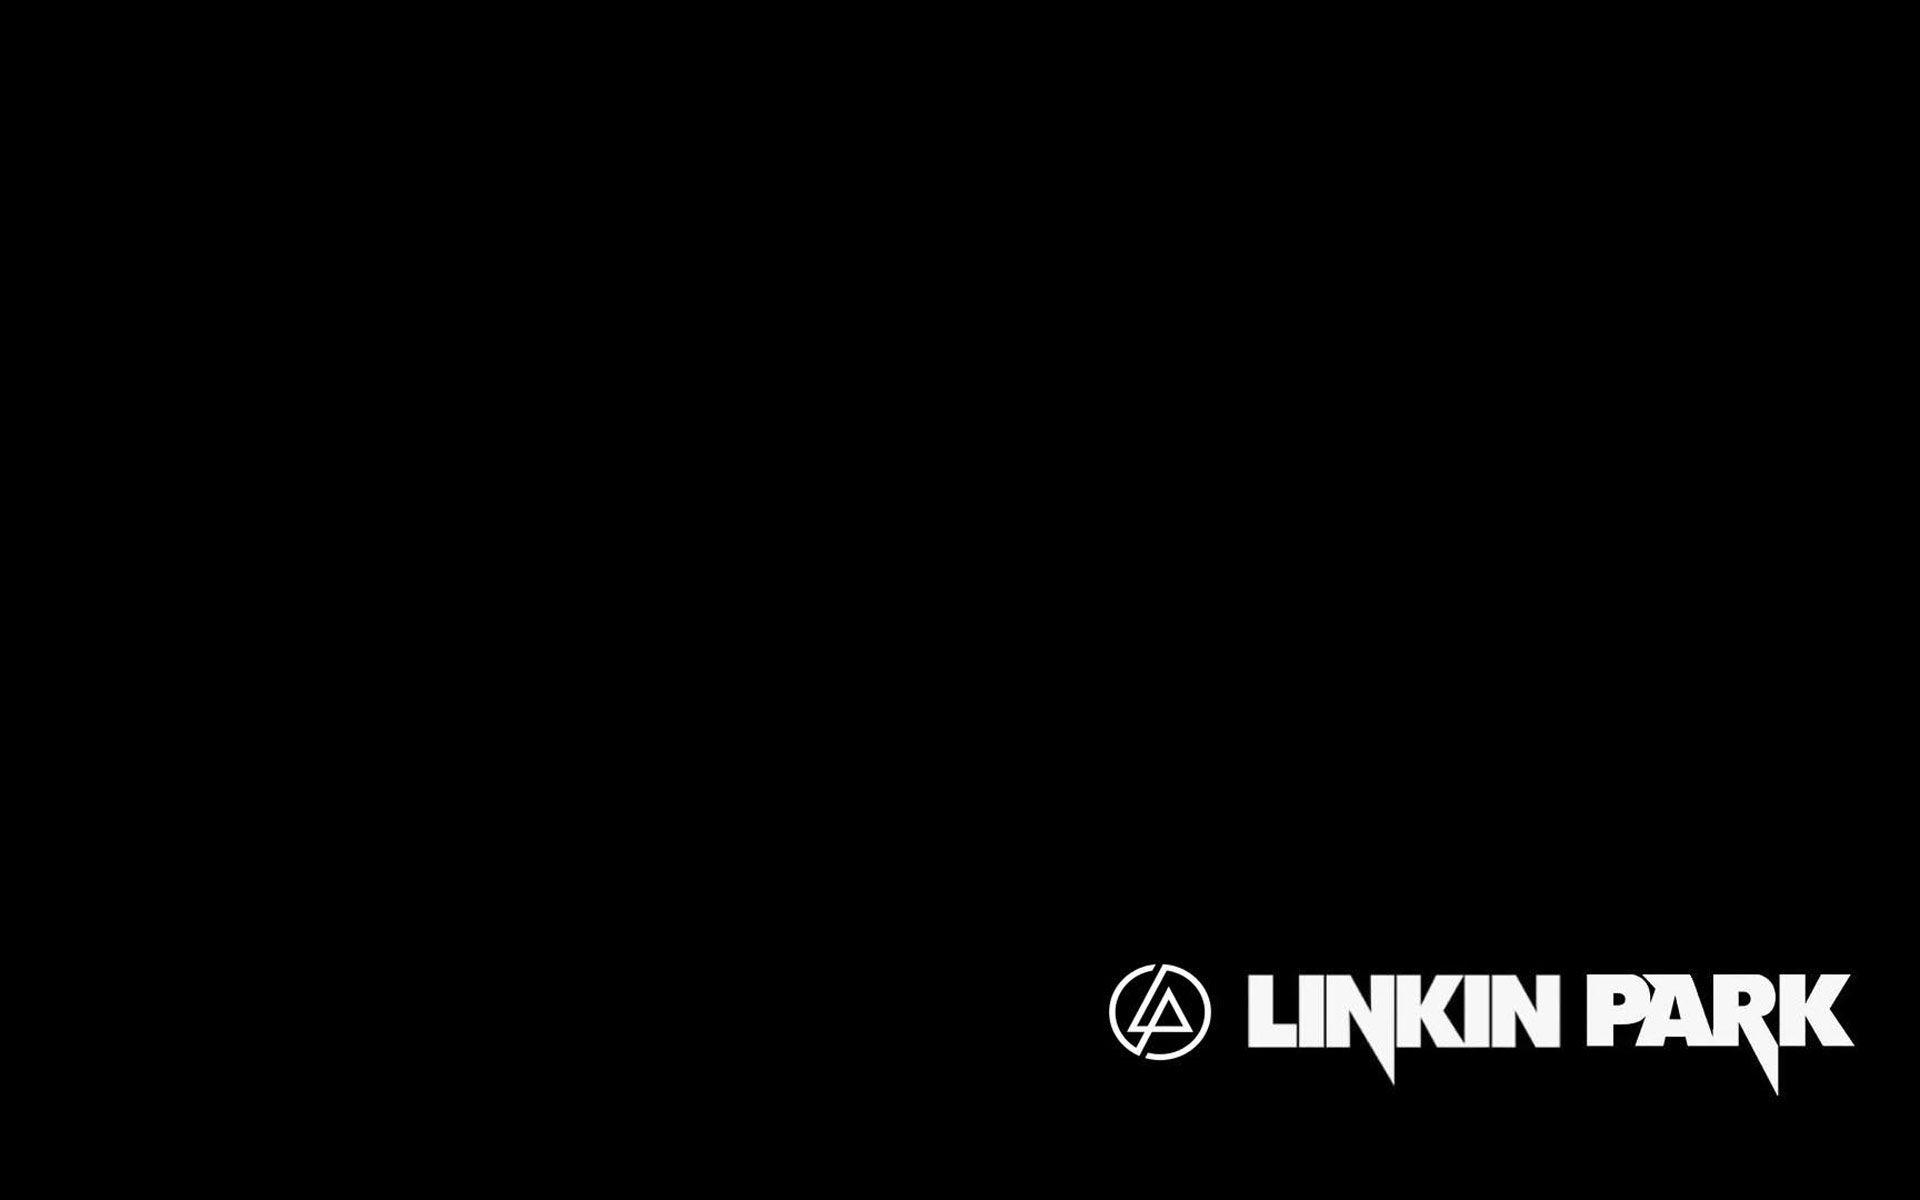 Linkin Park Wallpaper 12841 1920x1200 px